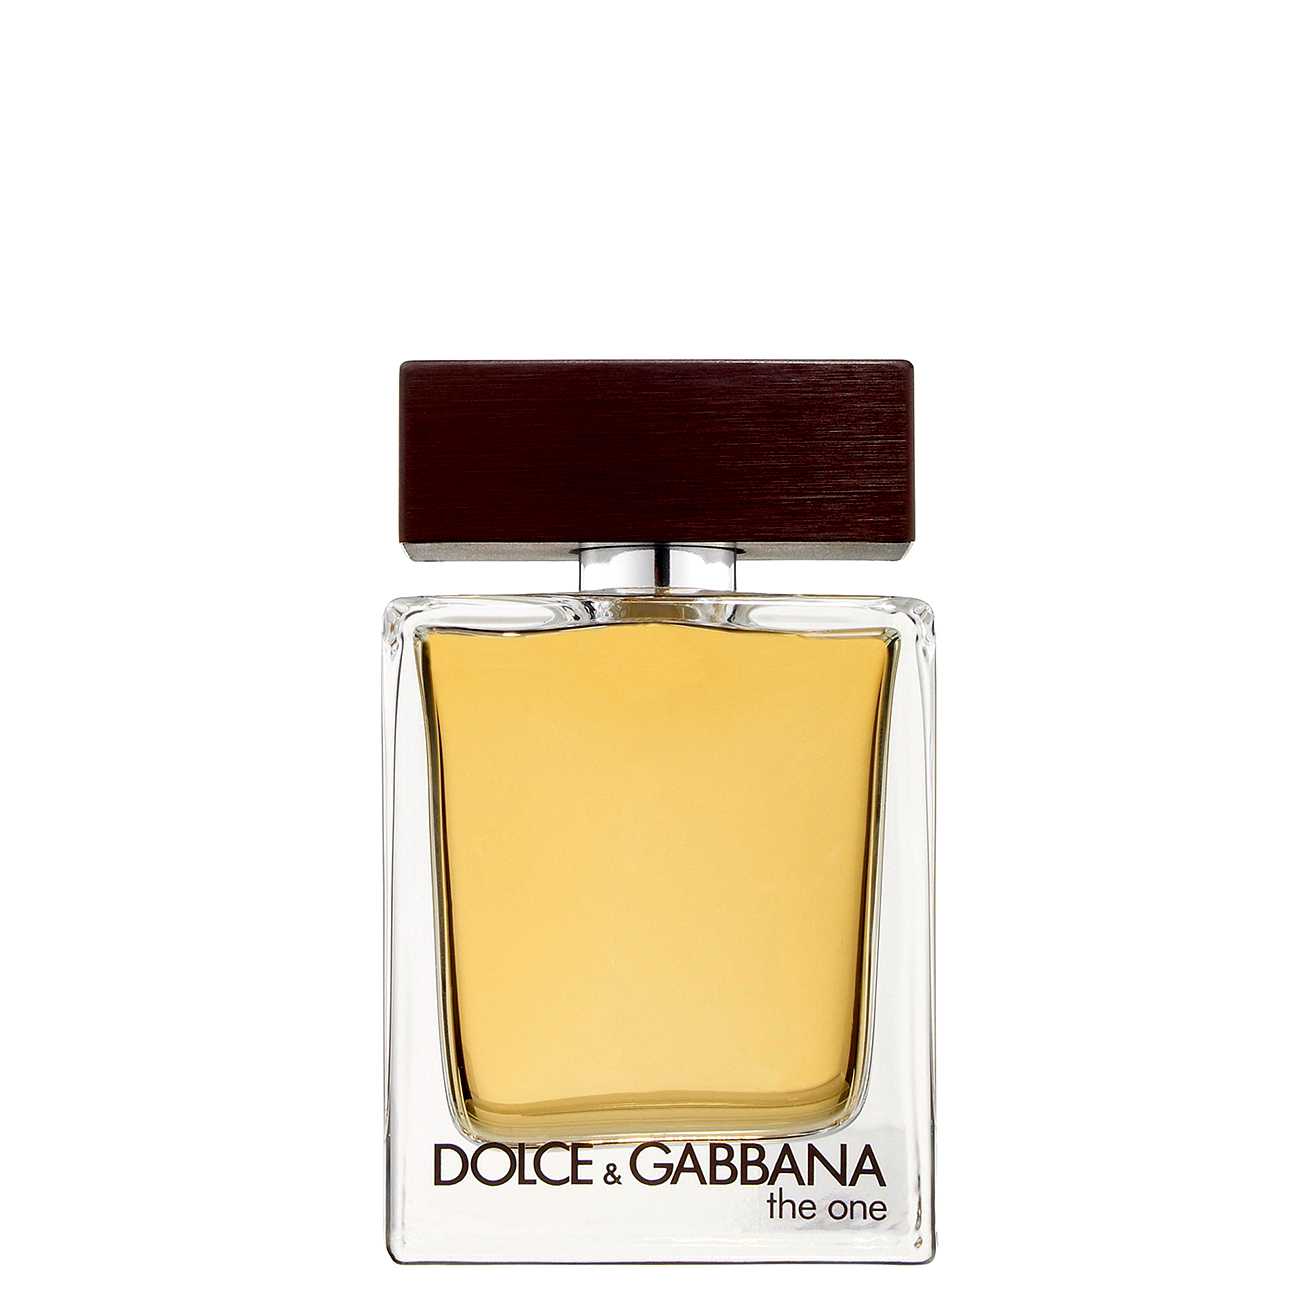 THE ONE Dolce & Gabbana bestvalue.eu